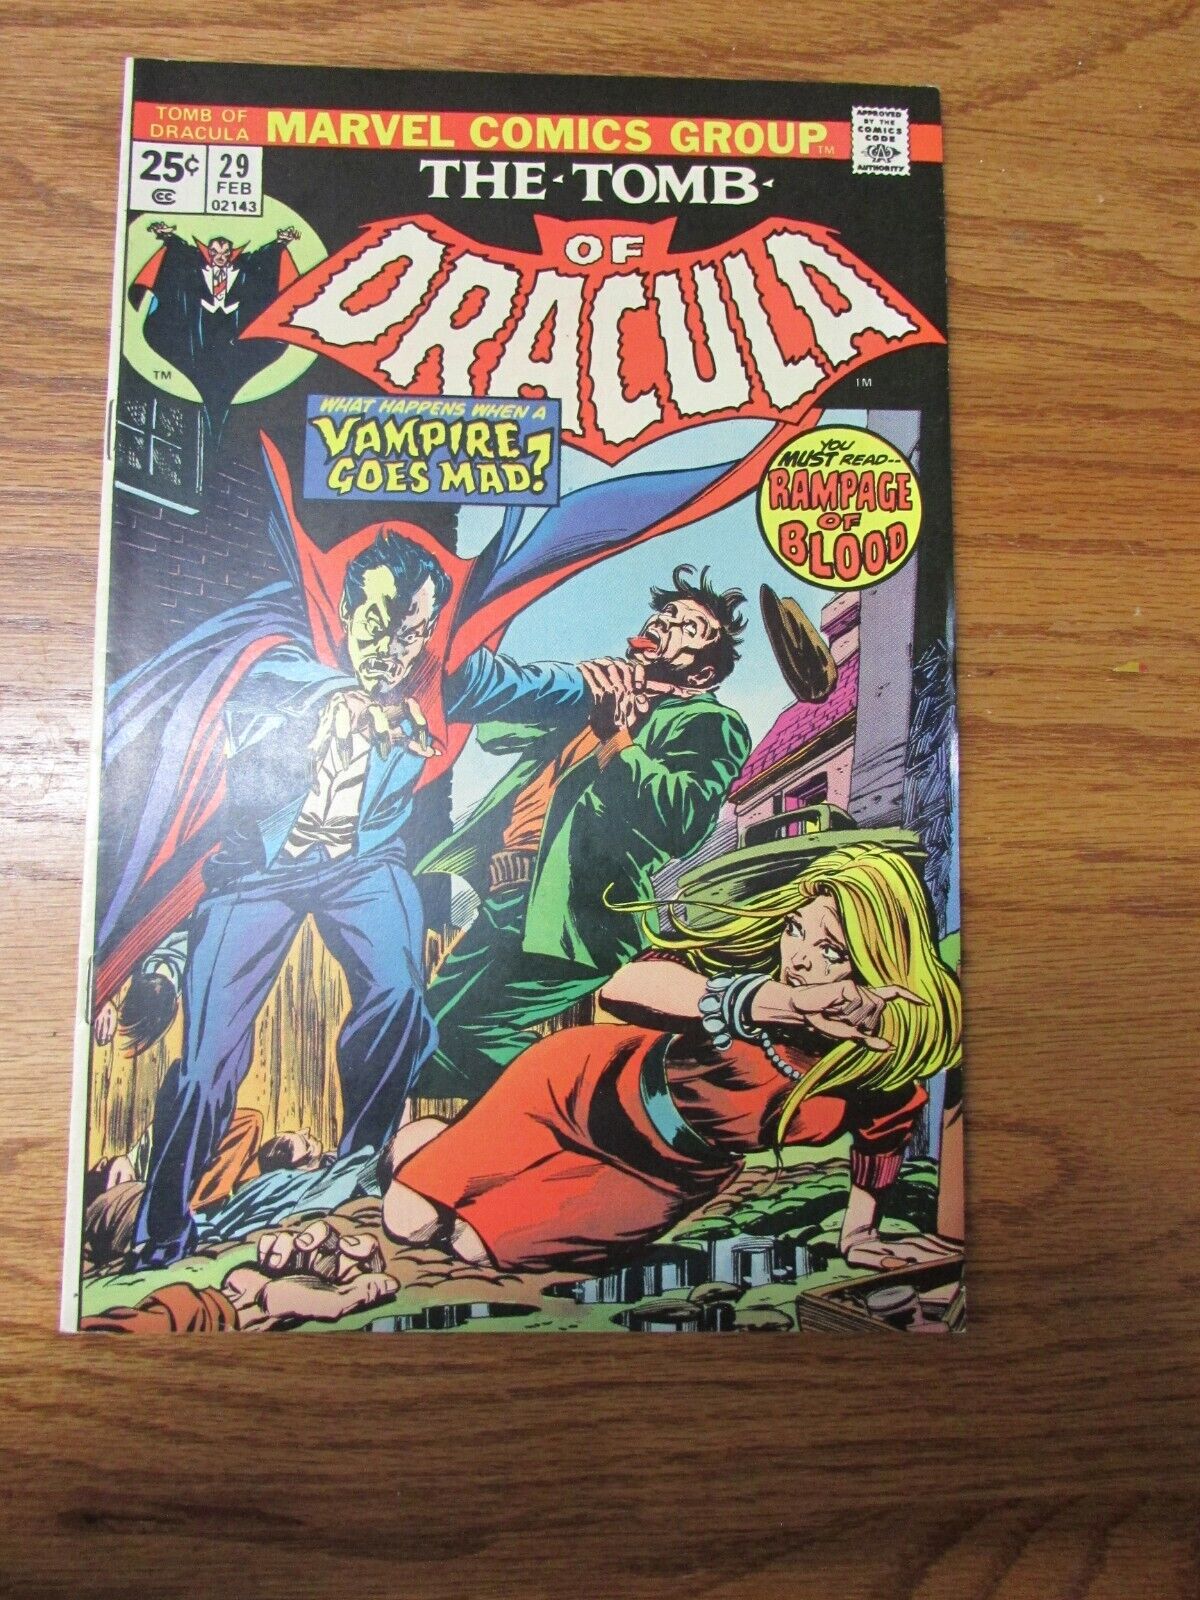 Vintage Marvel Comics Dracula Vol. 1 No. 29 February 1975 Comic Book